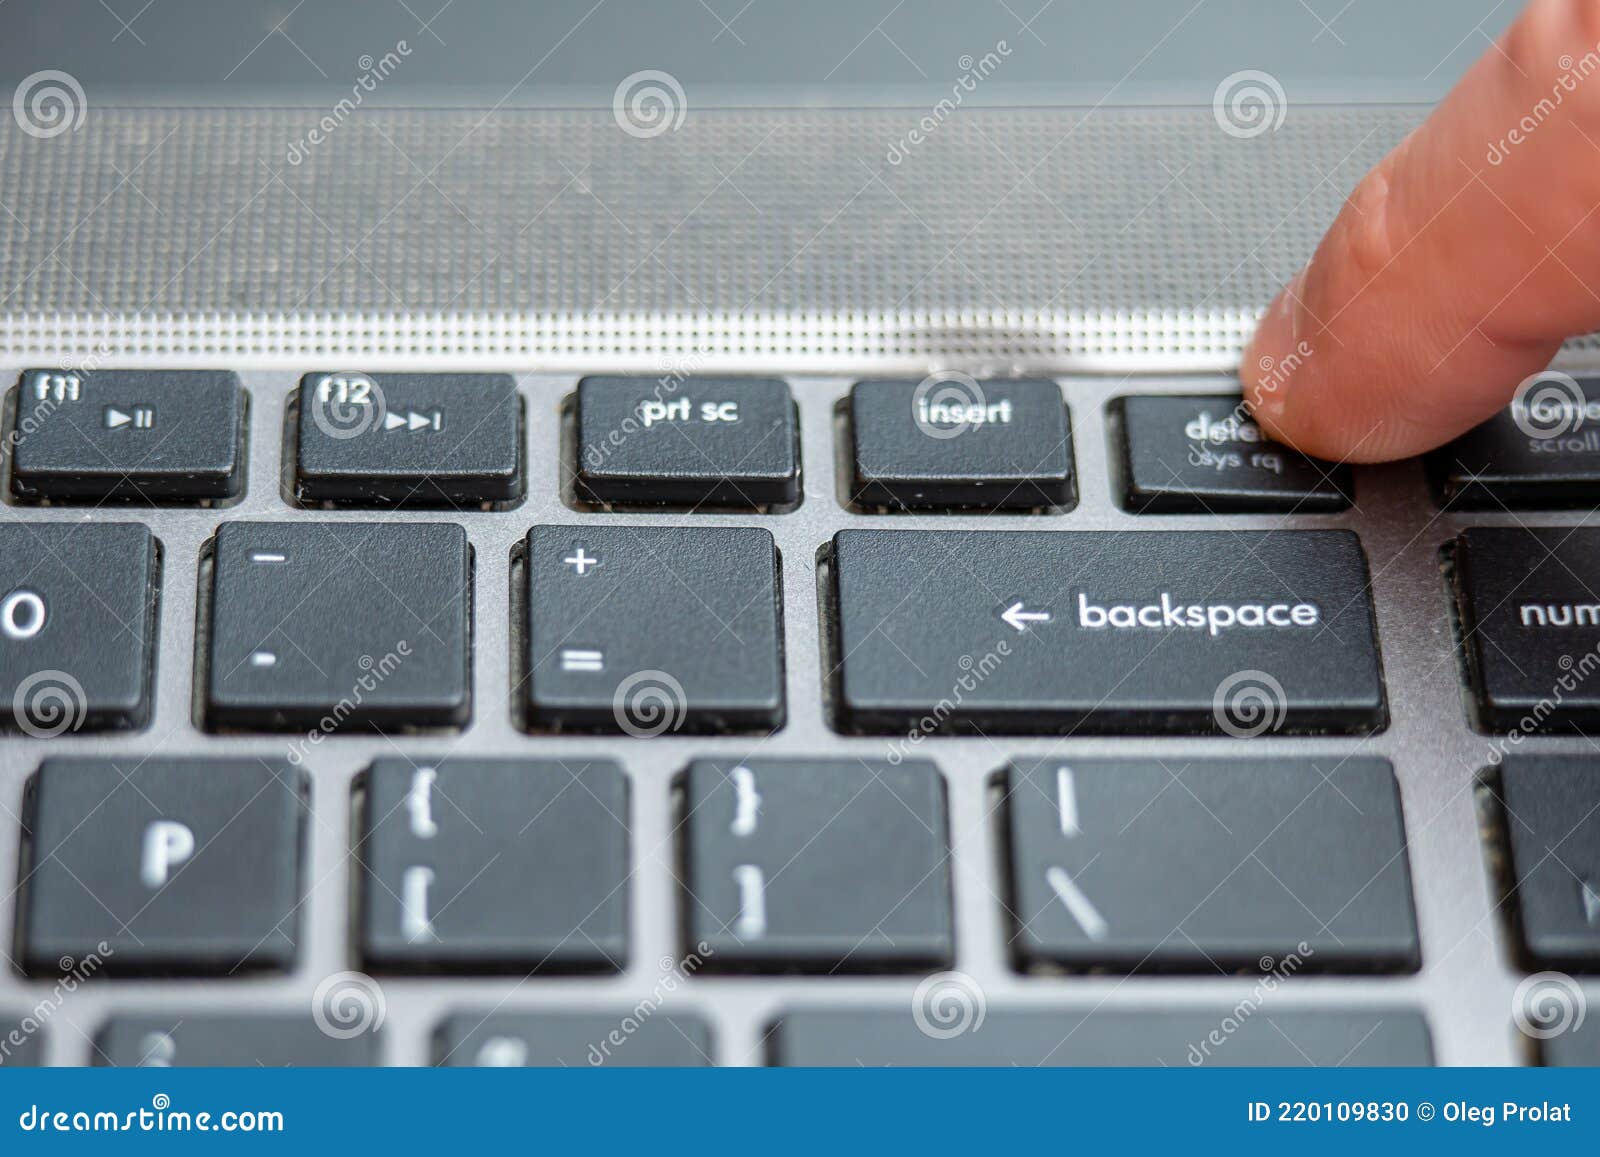 Общие функции клавиш delete и backspace. Кнопка бэкспейс на ноутбуке. Backspace на клавиатуре. Бекспейс на клавиатуре ноутбука. Backspace на клавиатуре ноутбука.